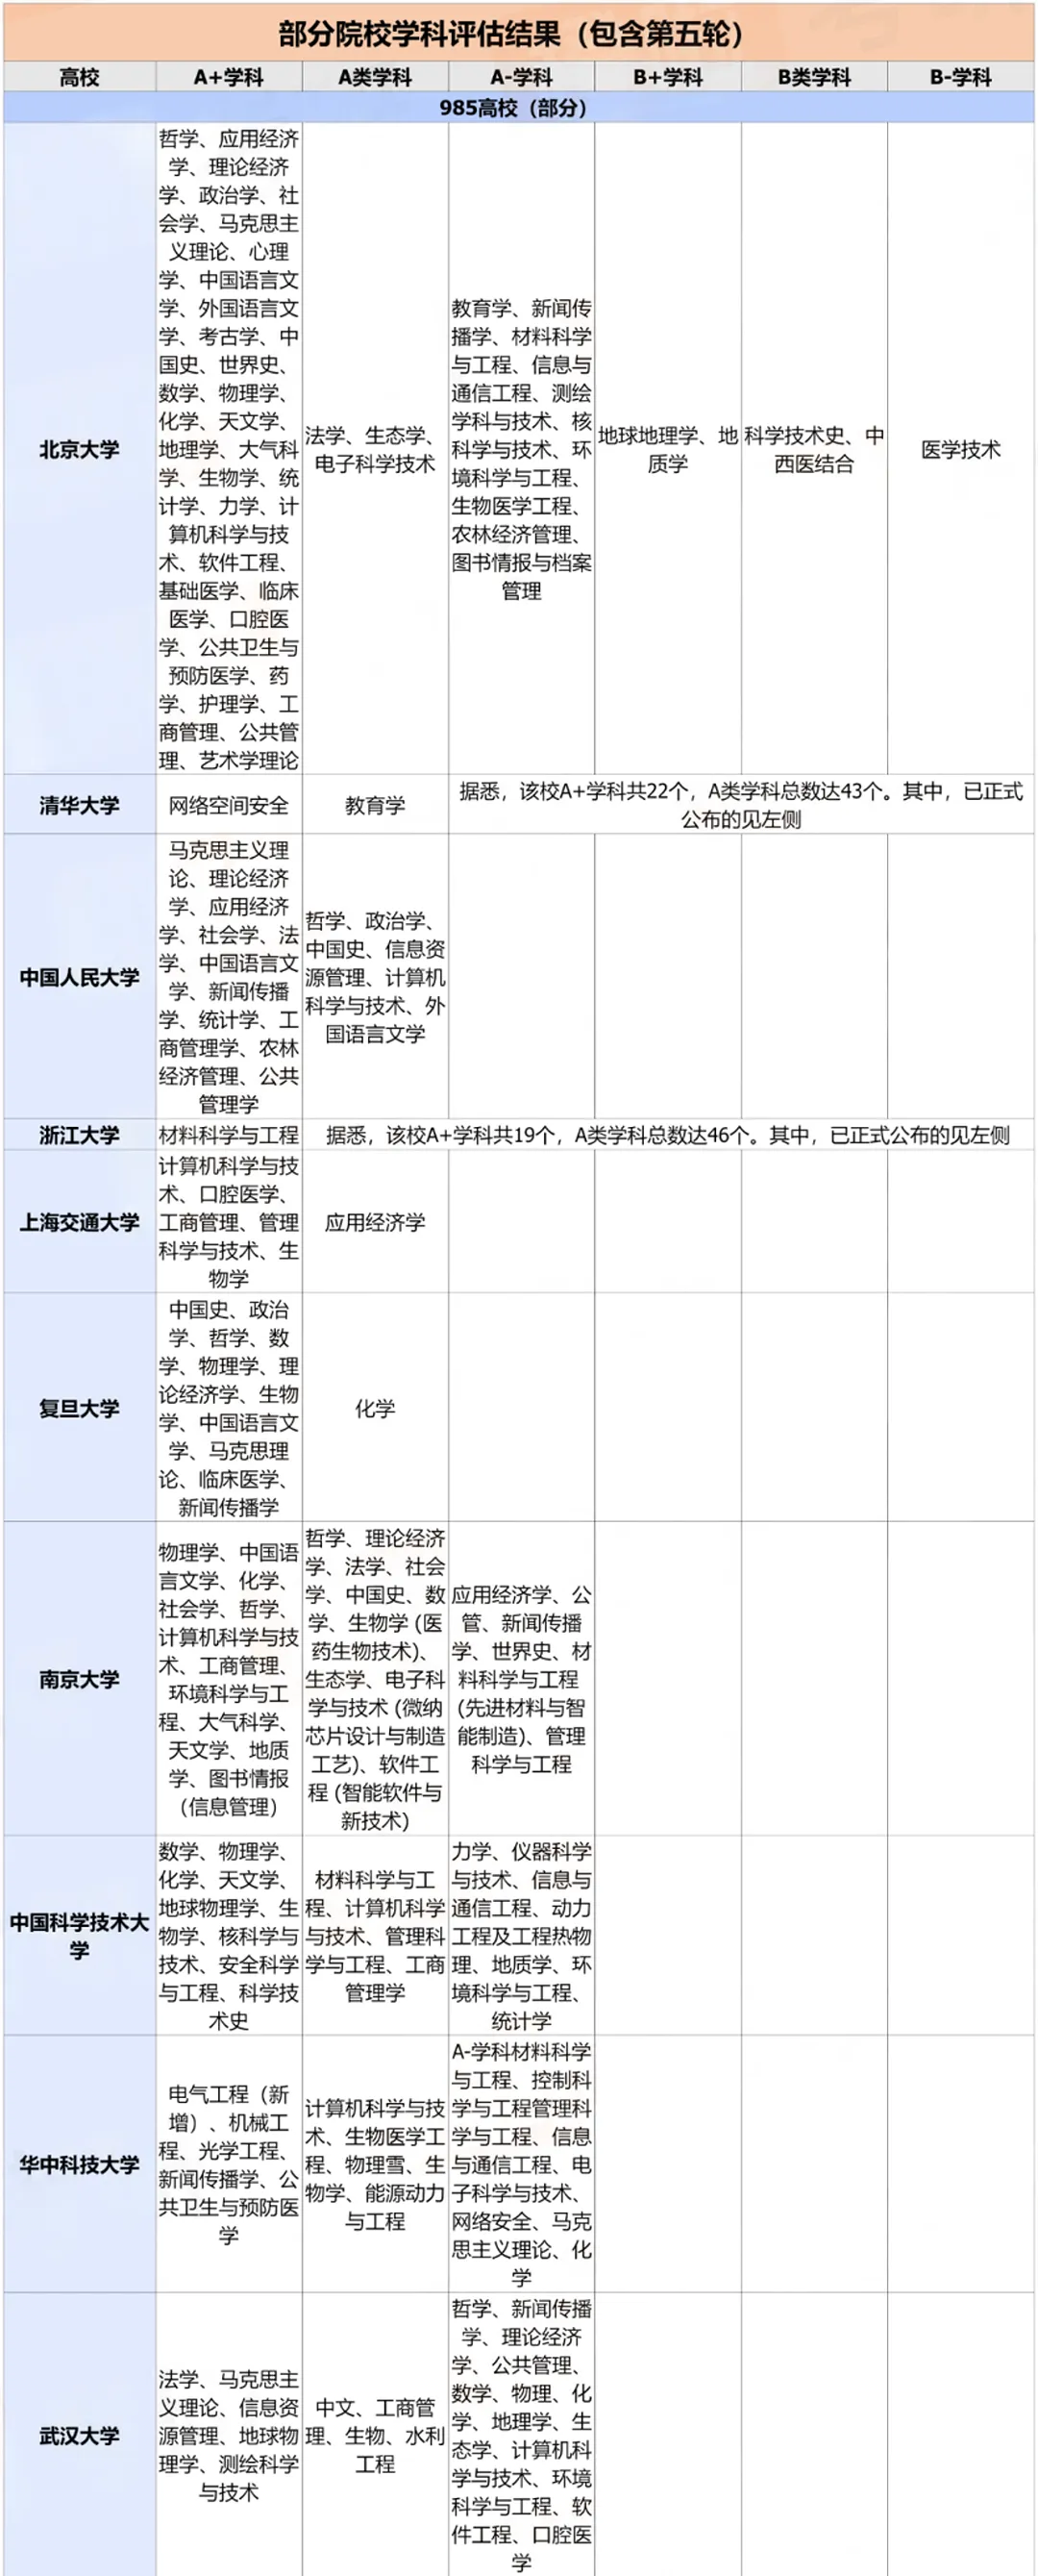 上海理工大学第五轮学科评估排名结果